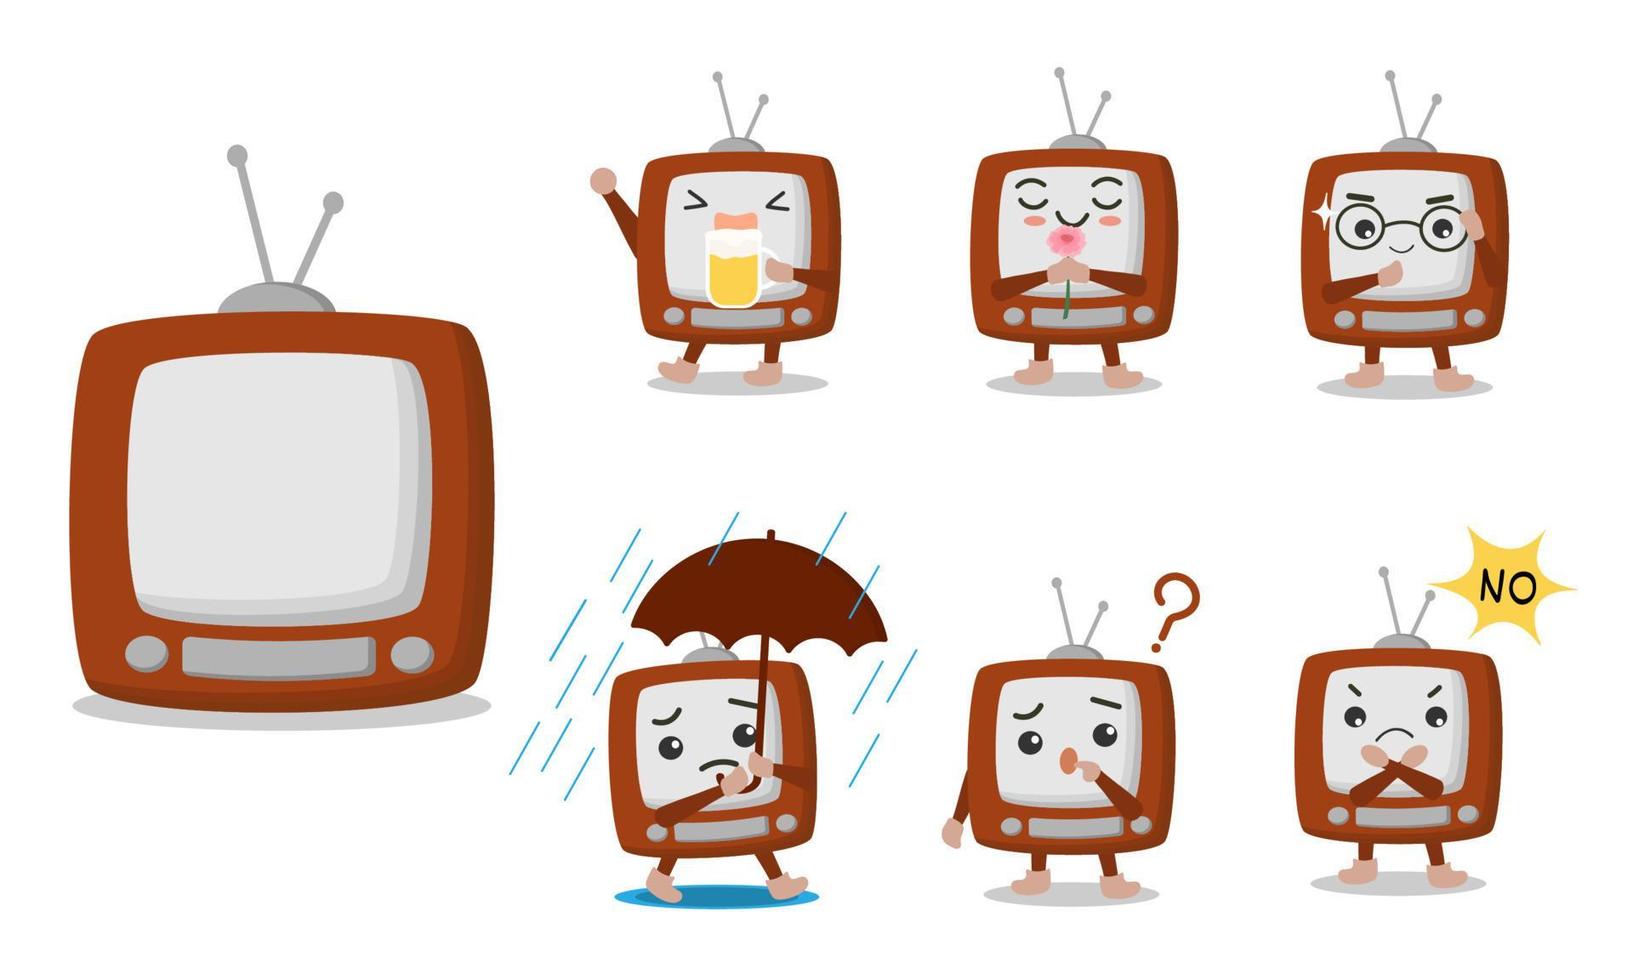 personnages de dessins animés télévisés dans diverses poses et émotions telles que la bière, renifler, porter des lunettes, pleuvoir, se demander, refuser. vecteur